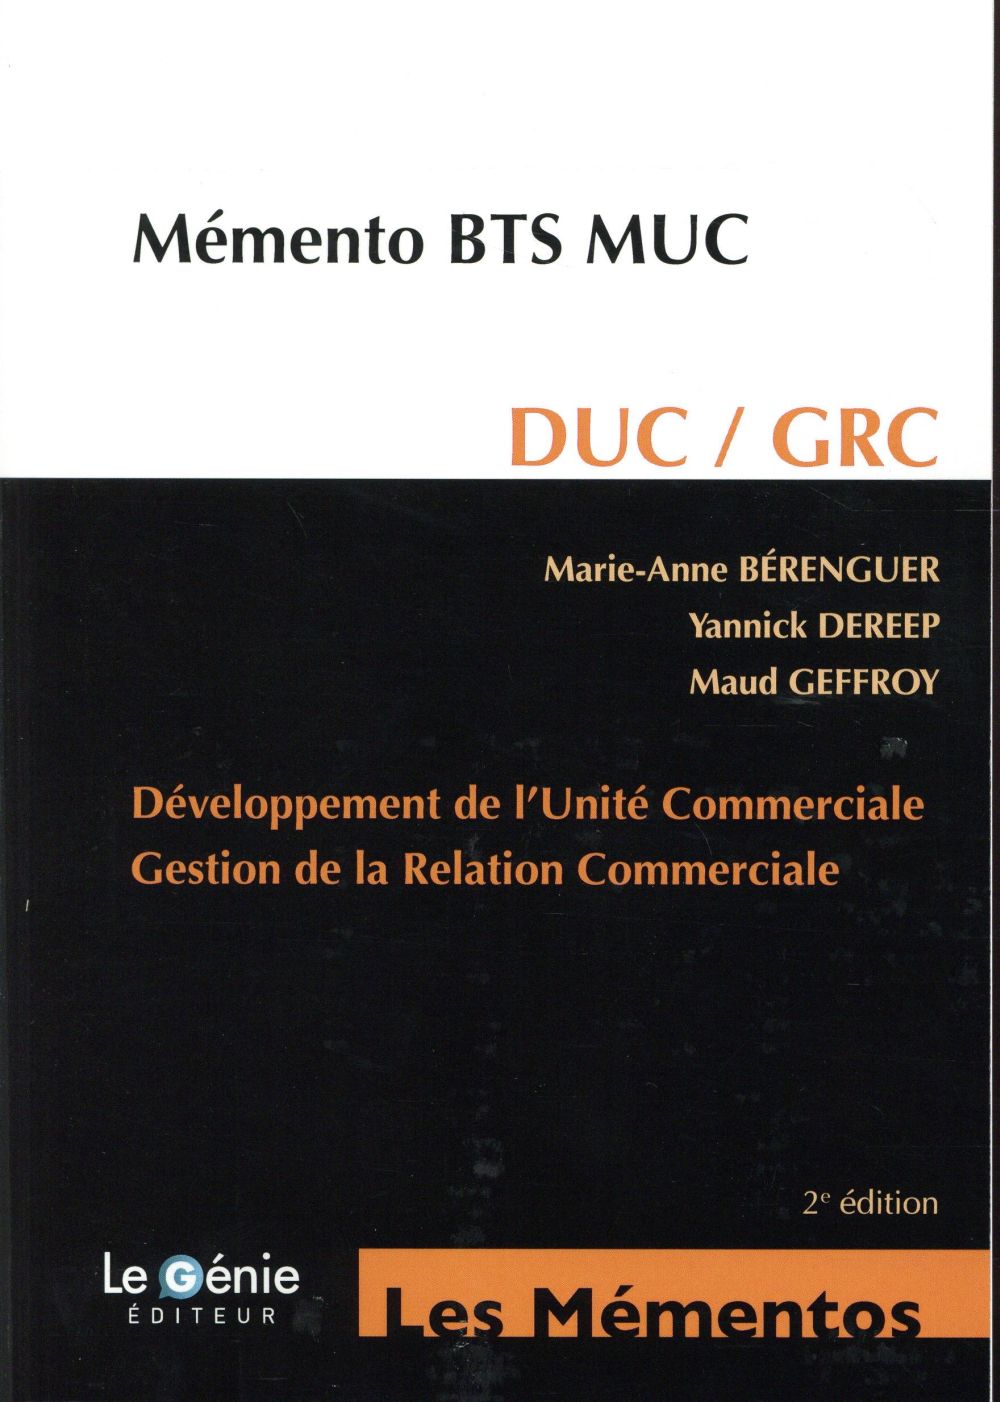 DUC-GRC - BTS MUC - DEVELOPPEMENT DE L'UNITE COMMERCIALE - GESTION DE LA RELATION COMMERCIALE.